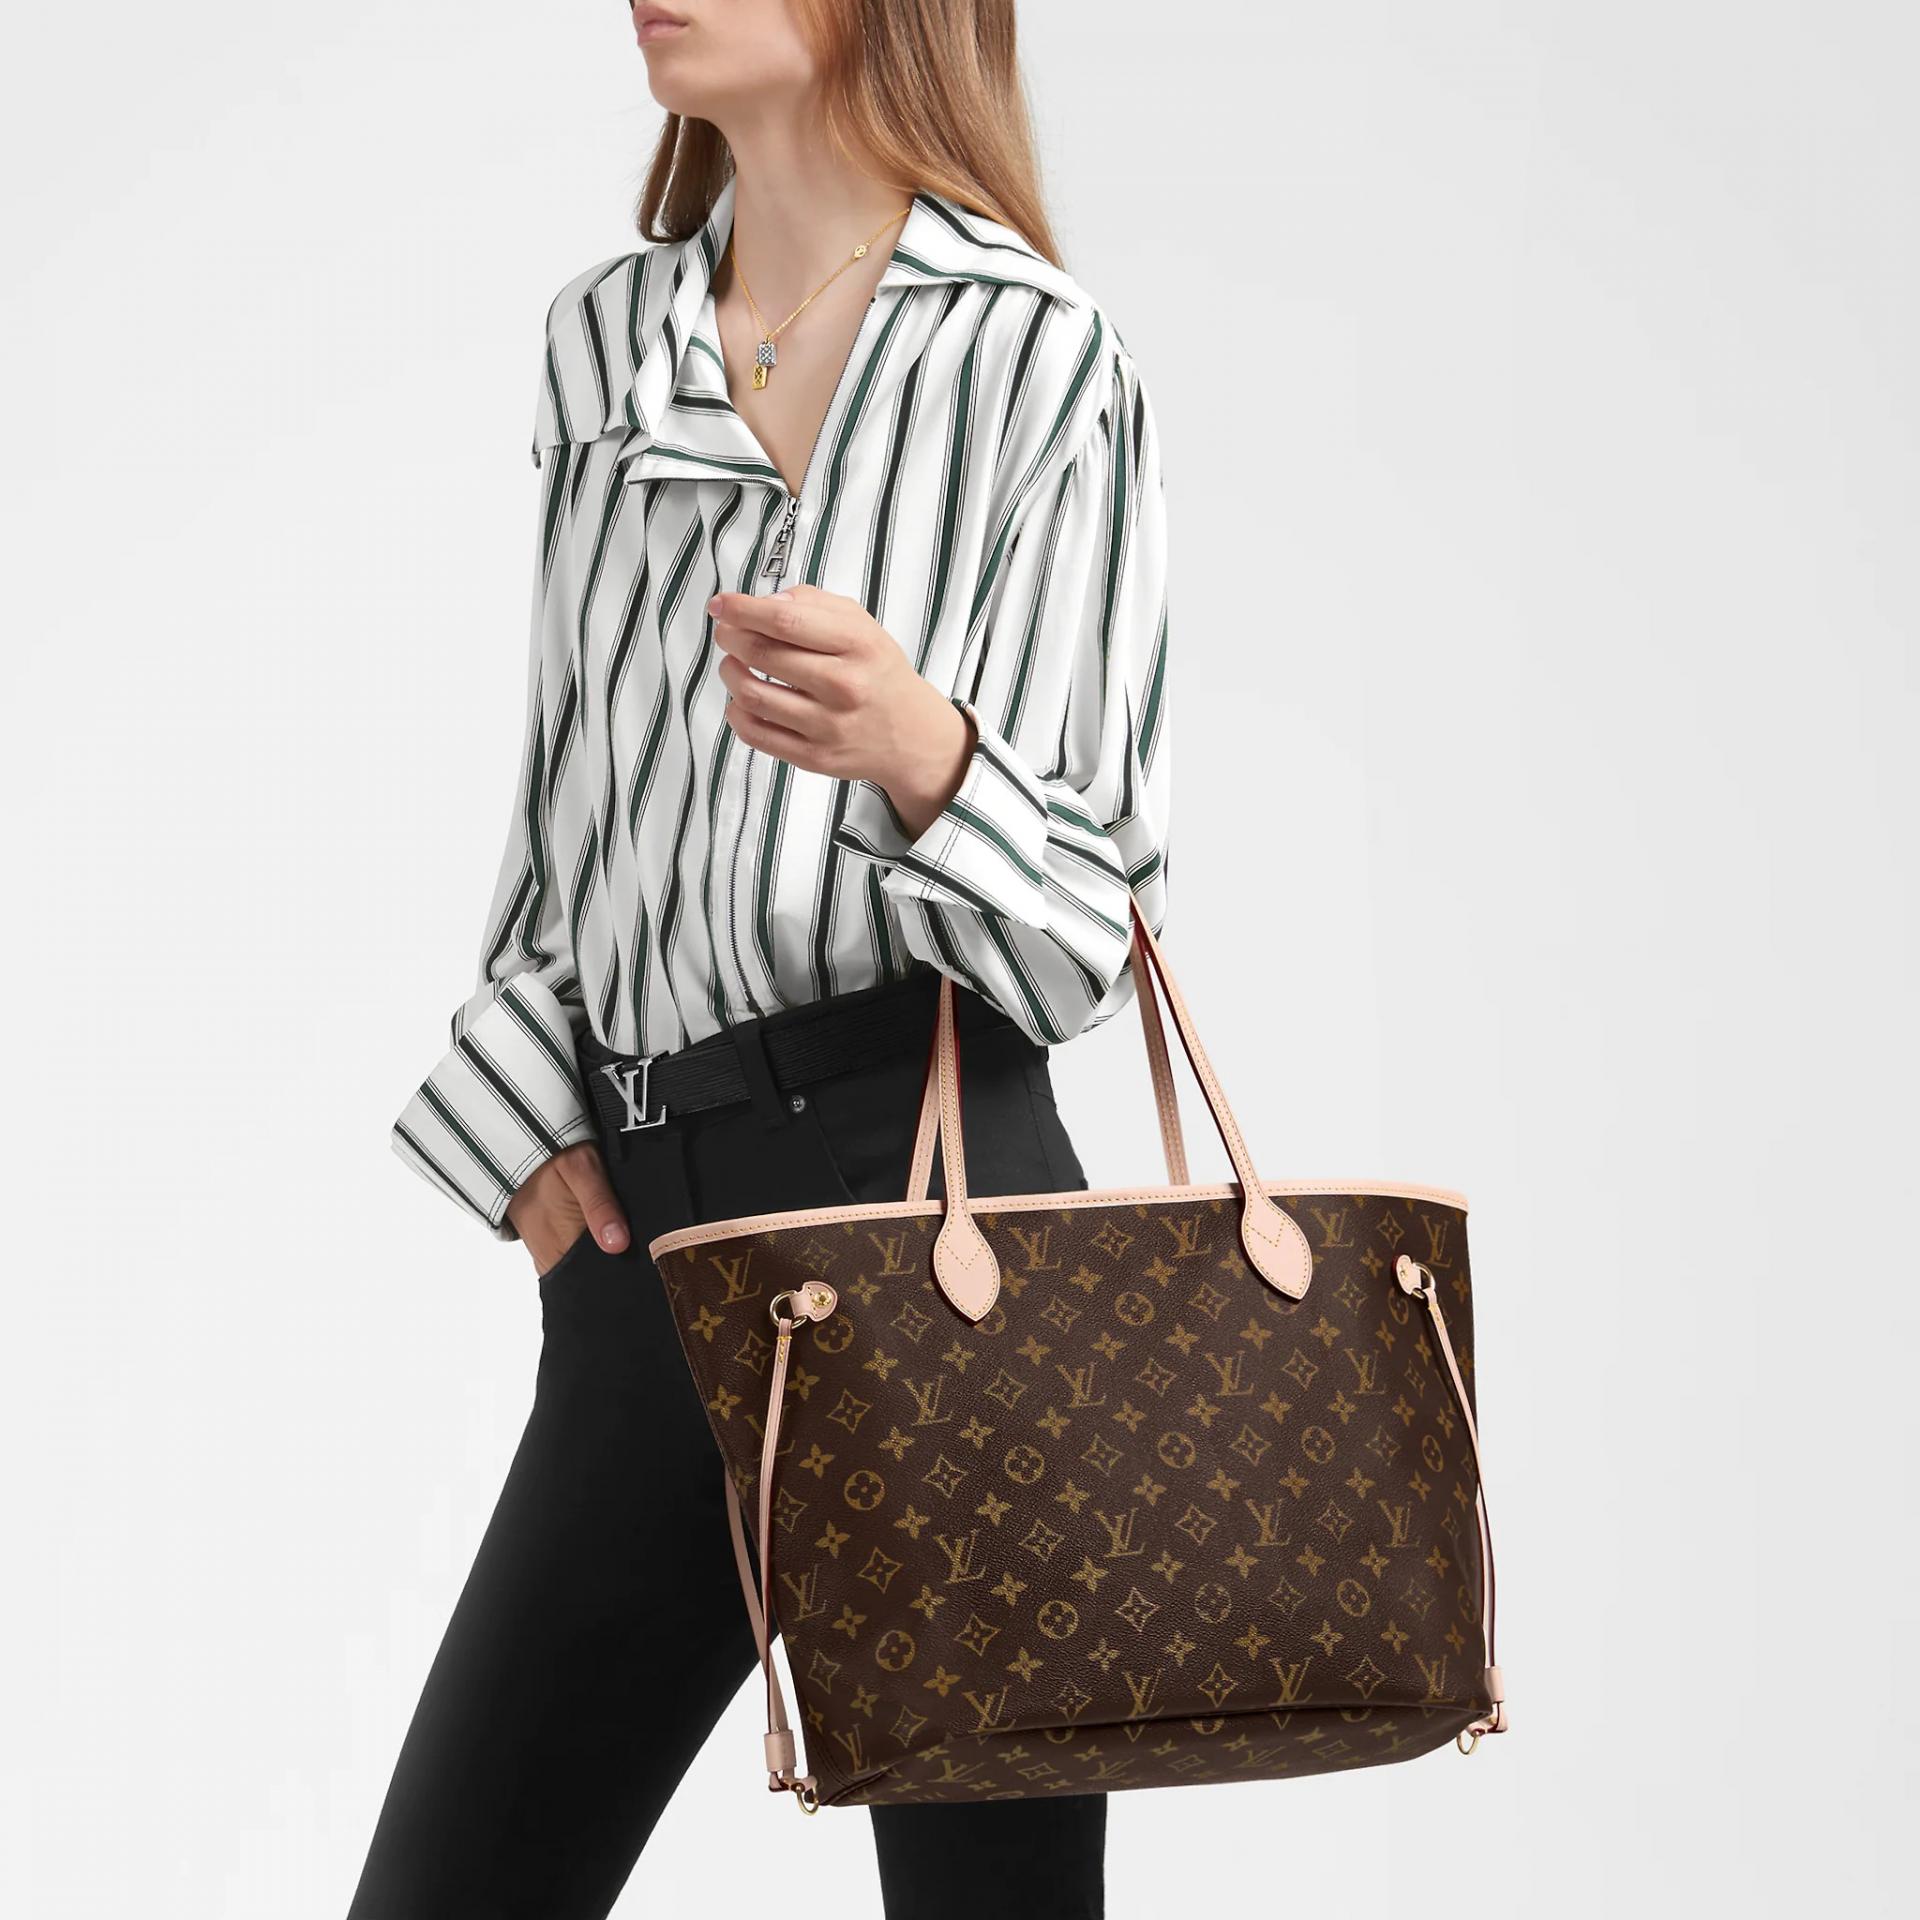 Zbog pada funte Louis Vuitton torbice su sada najjeftinije u